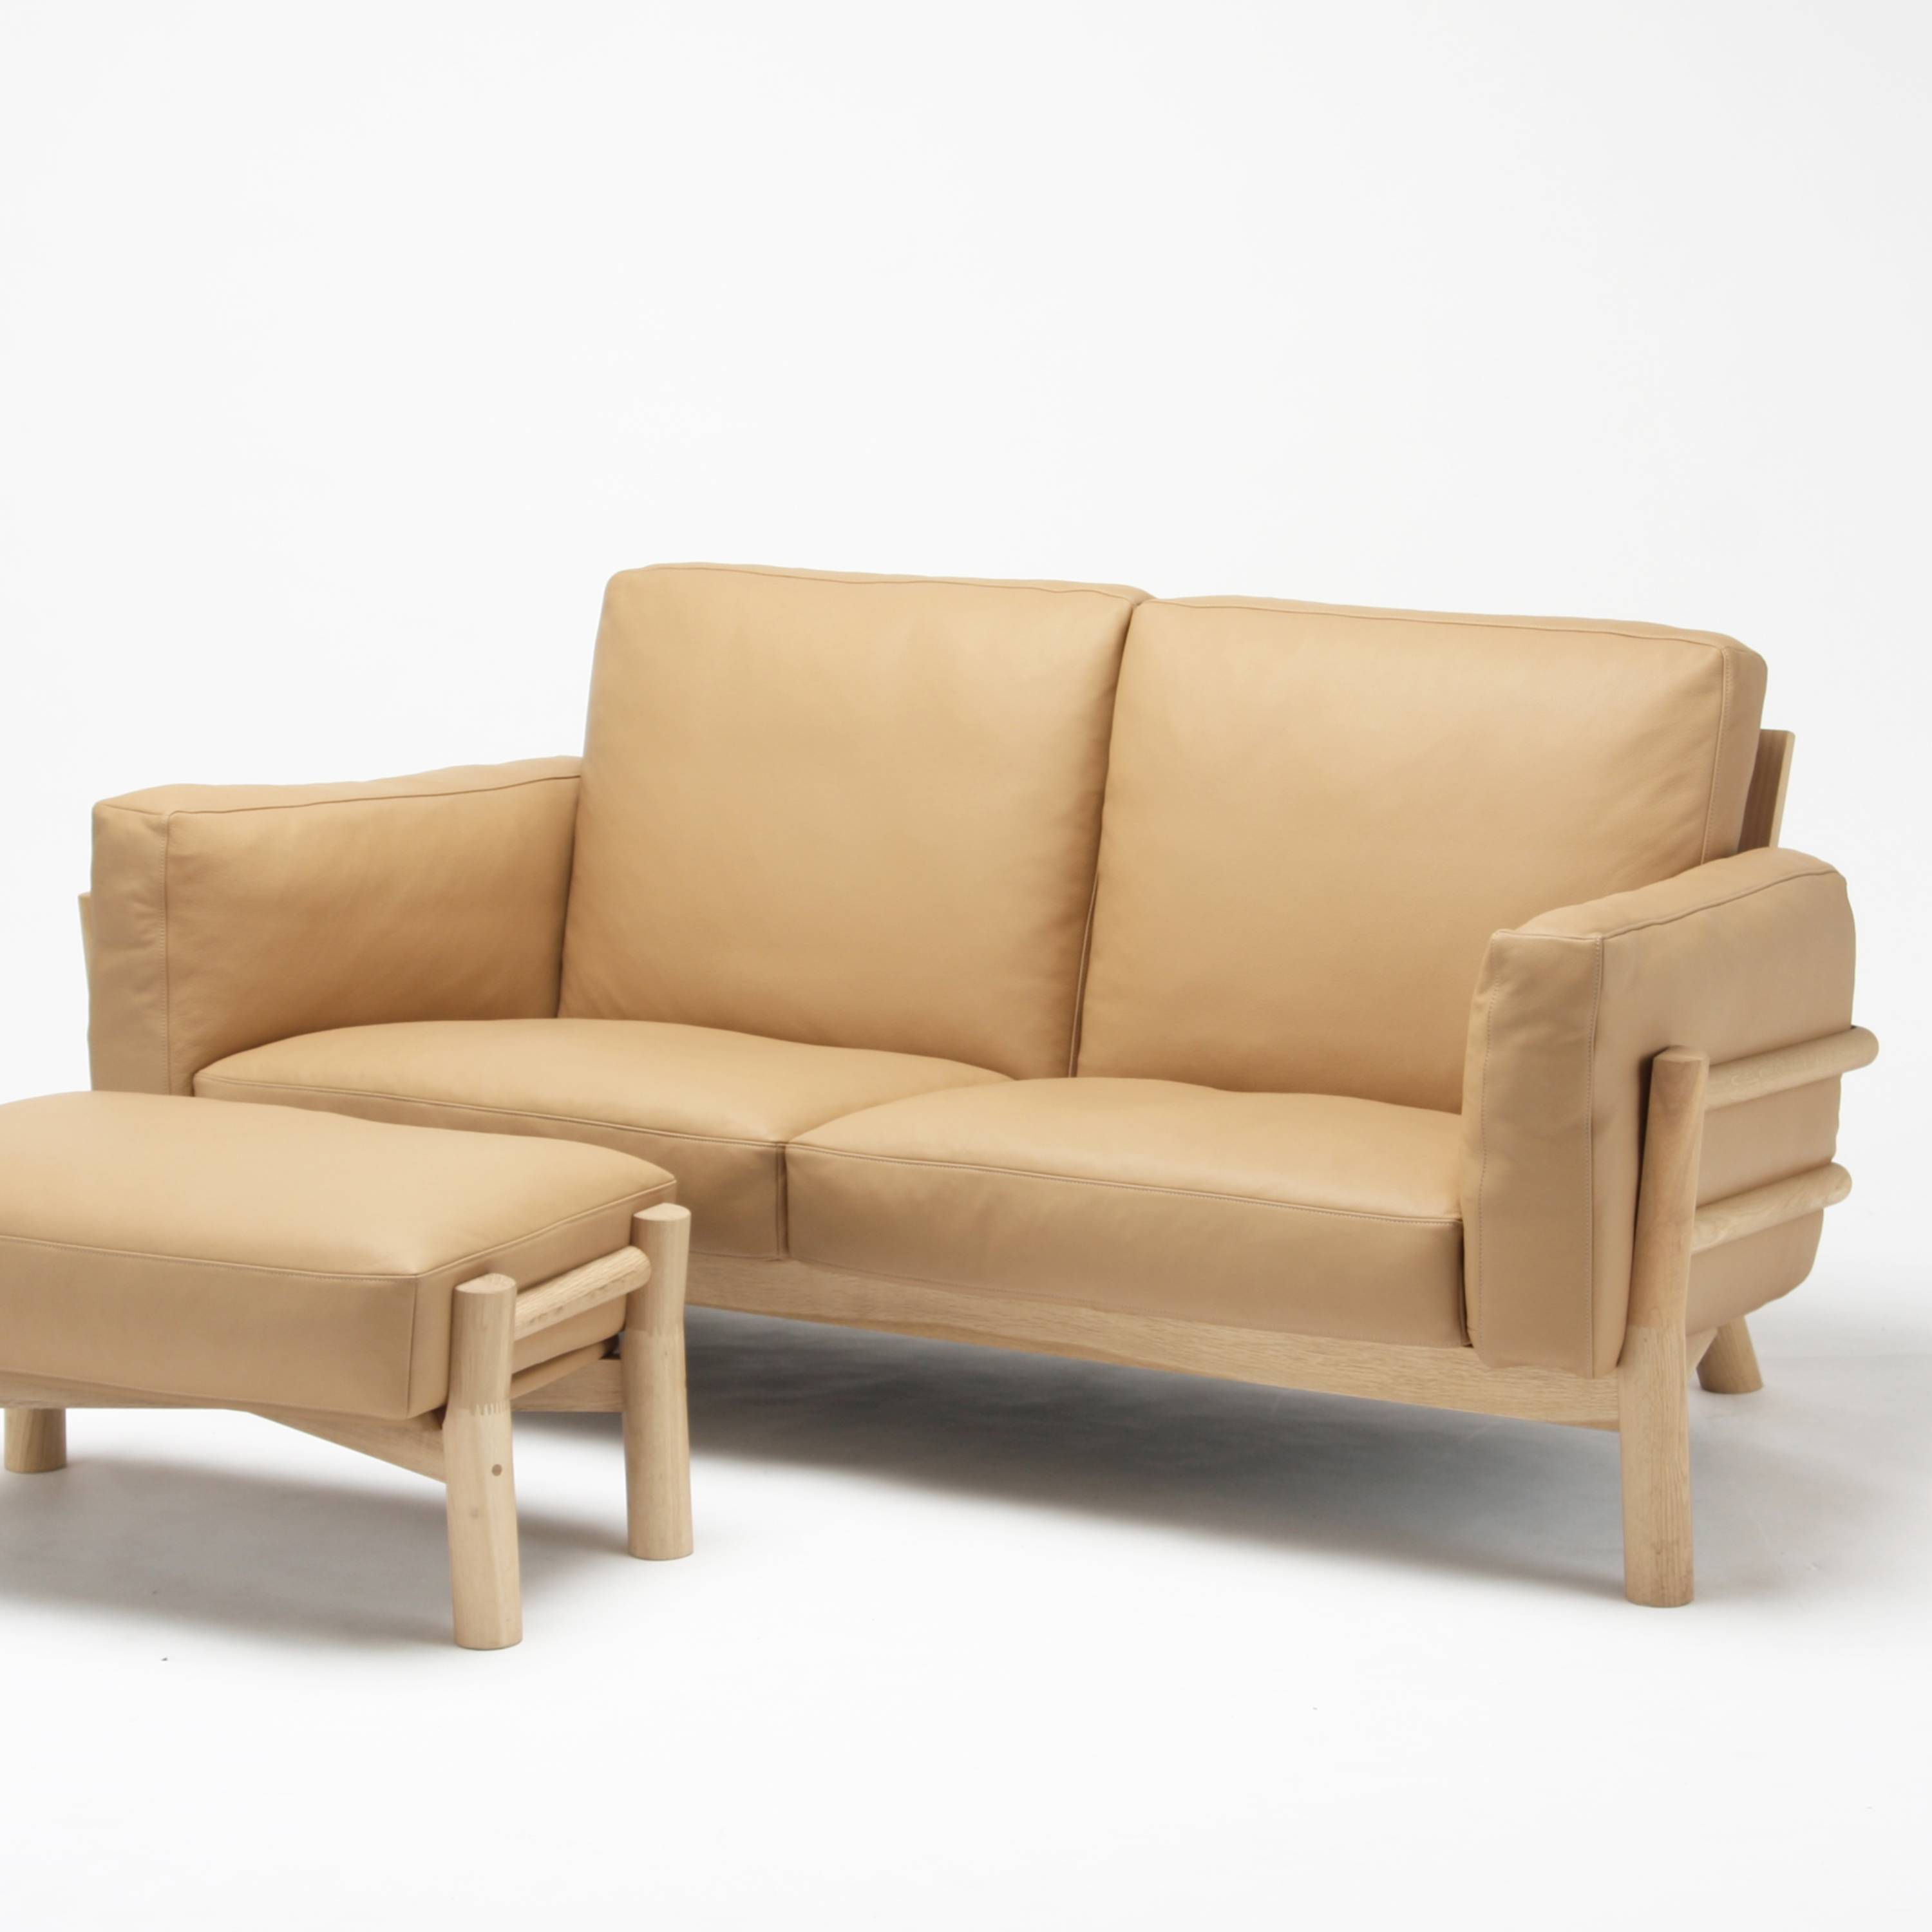 Castor Sofa 2 Seater